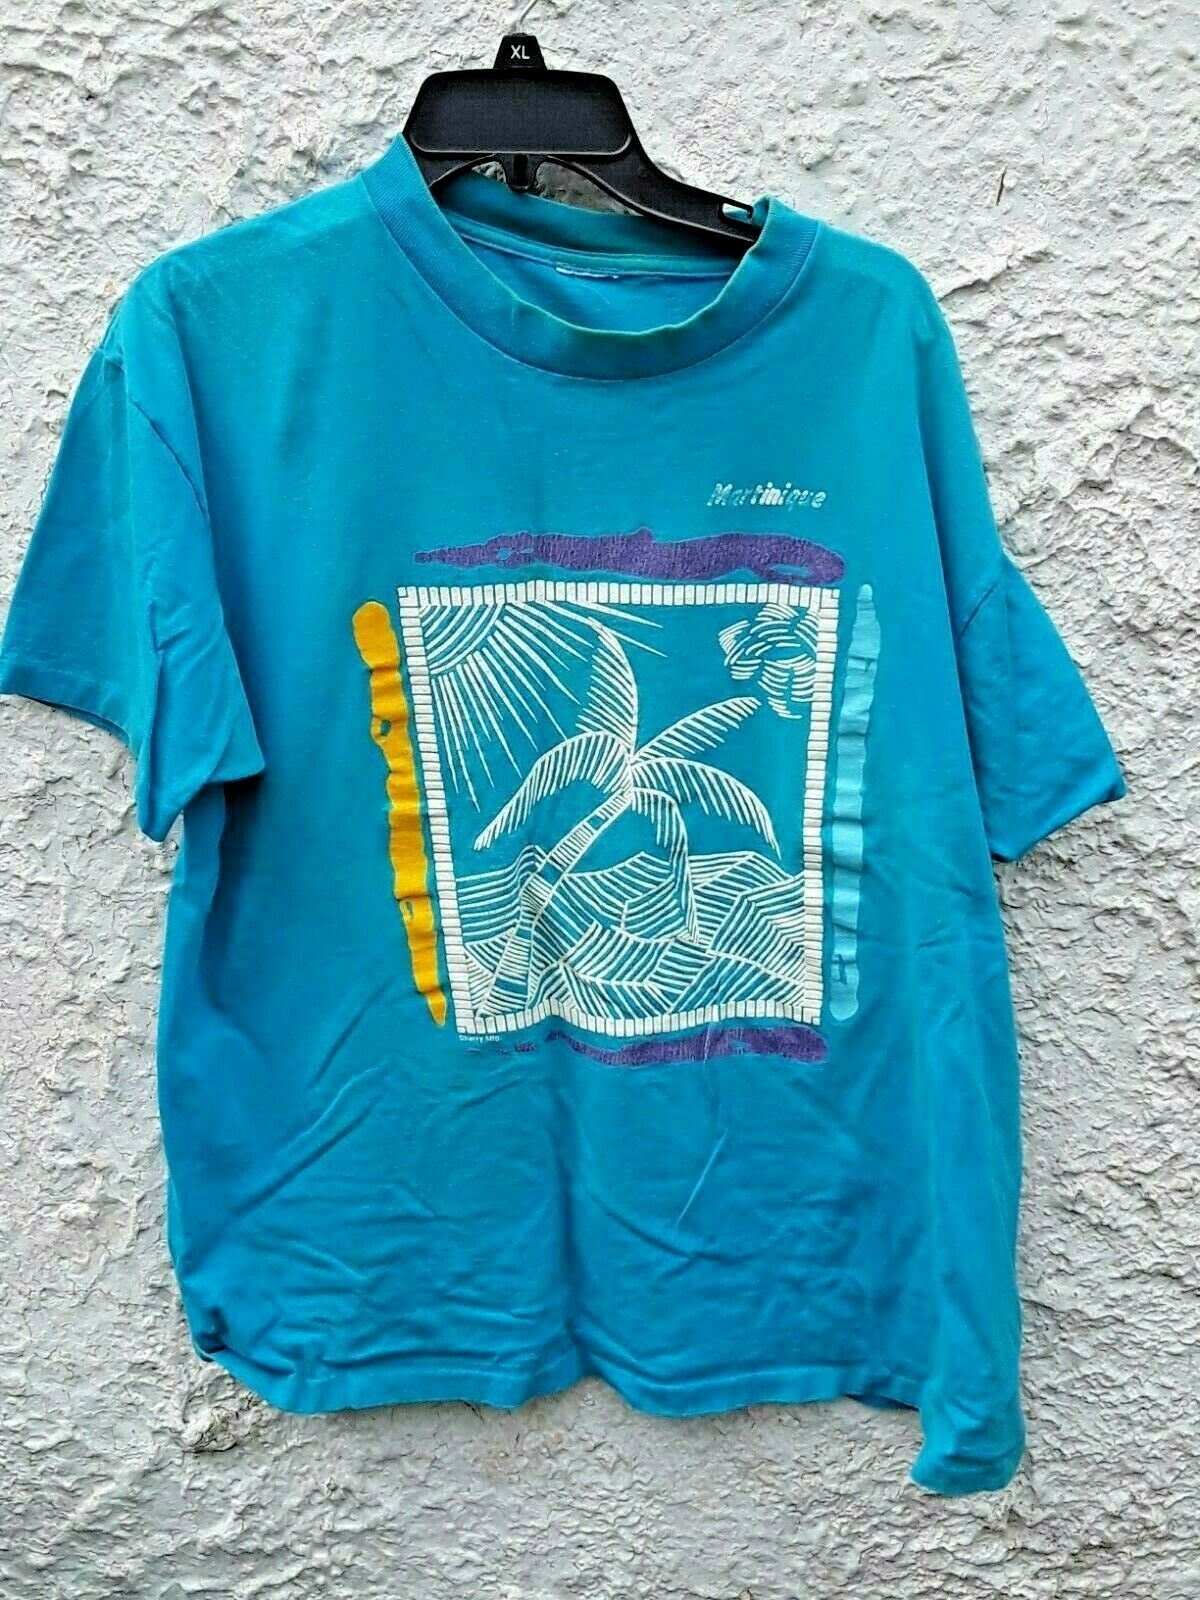 Vintage Vintage 90s Martinique T Shirt XL Size US XL / EU 56 / 4 - 1 Preview